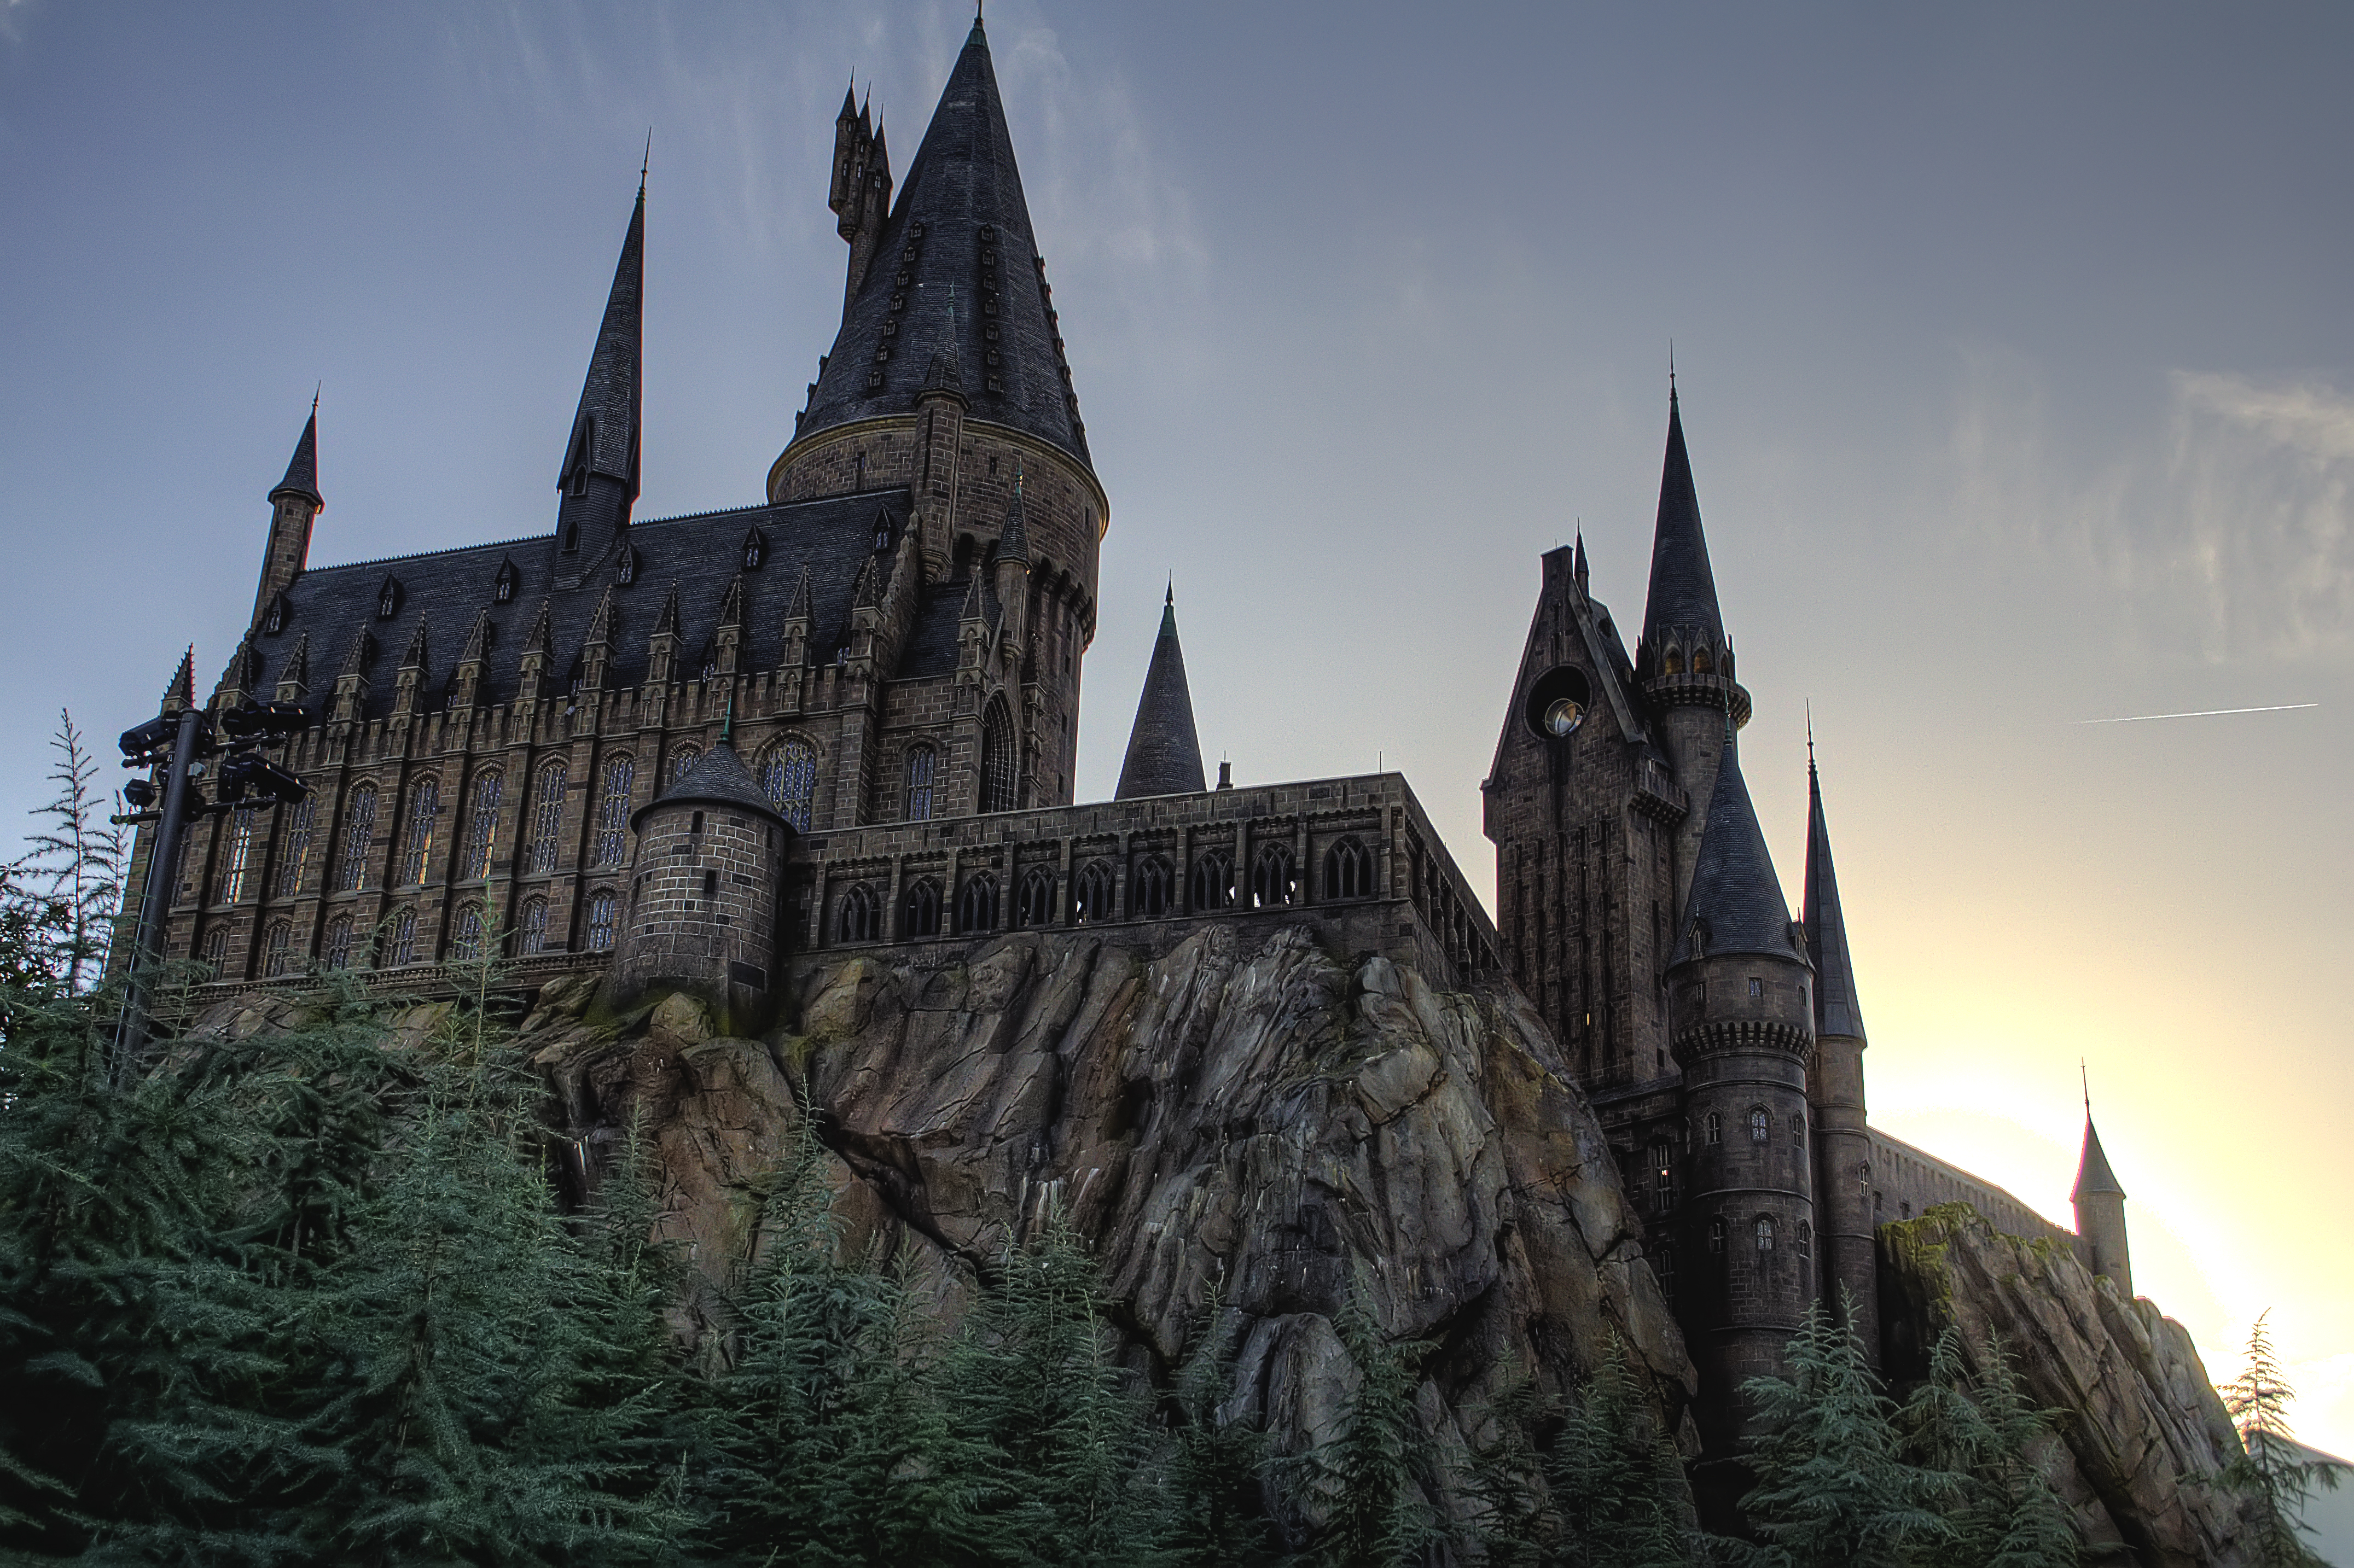 carta da parati di hogwarts,architettura medievale,guglia,architettura gotica,architettura,cattedrale